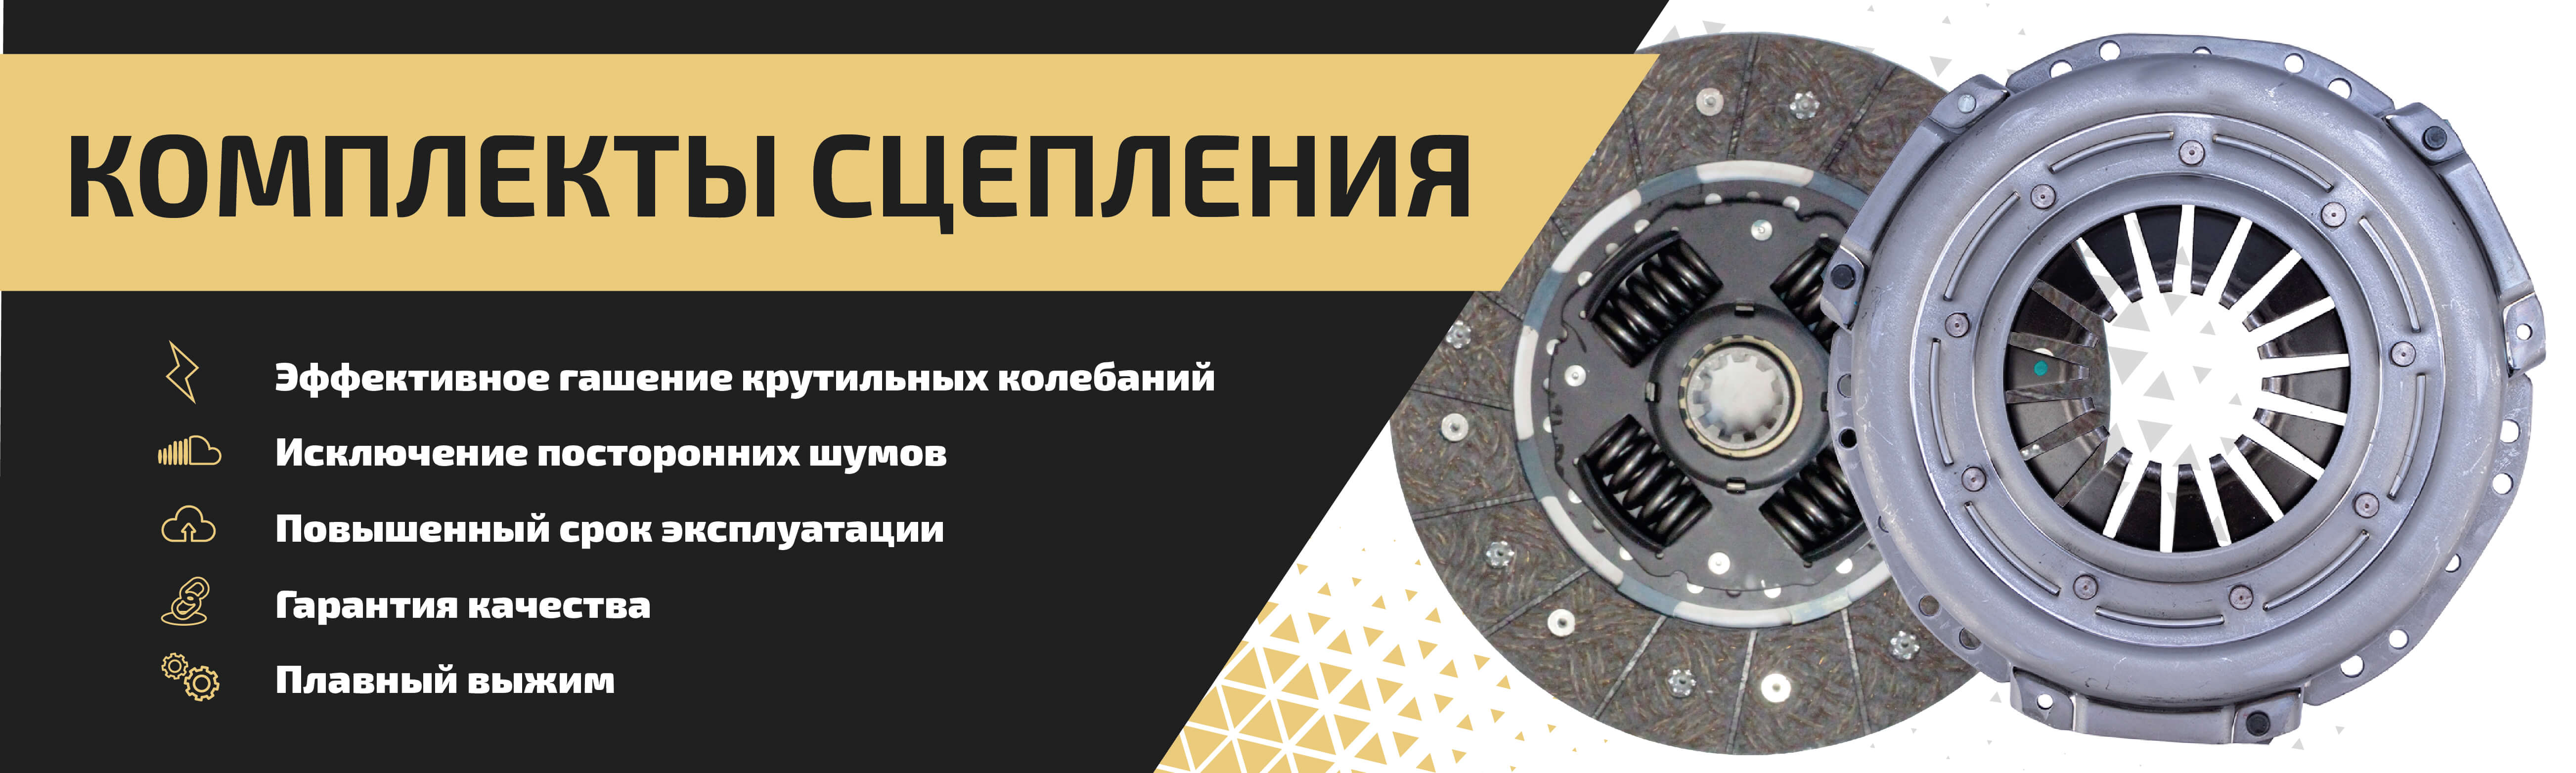 Сцепление для ГАЗ и УАЗ ⚙ — купить в Санкт-Петербурге, цены в Metalpart.ru